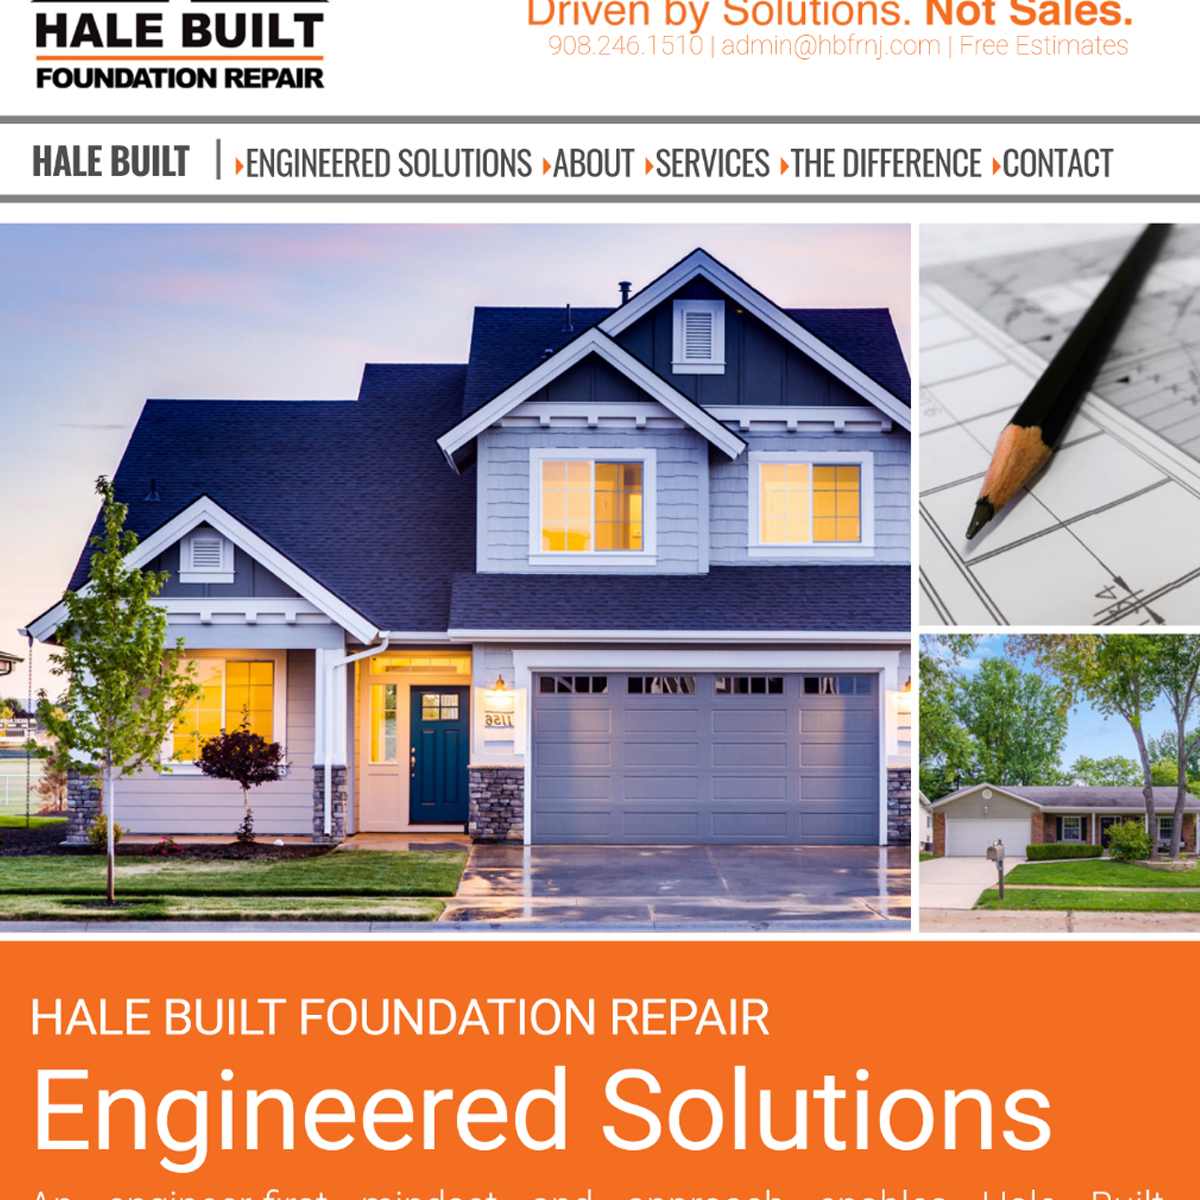 hale built website design